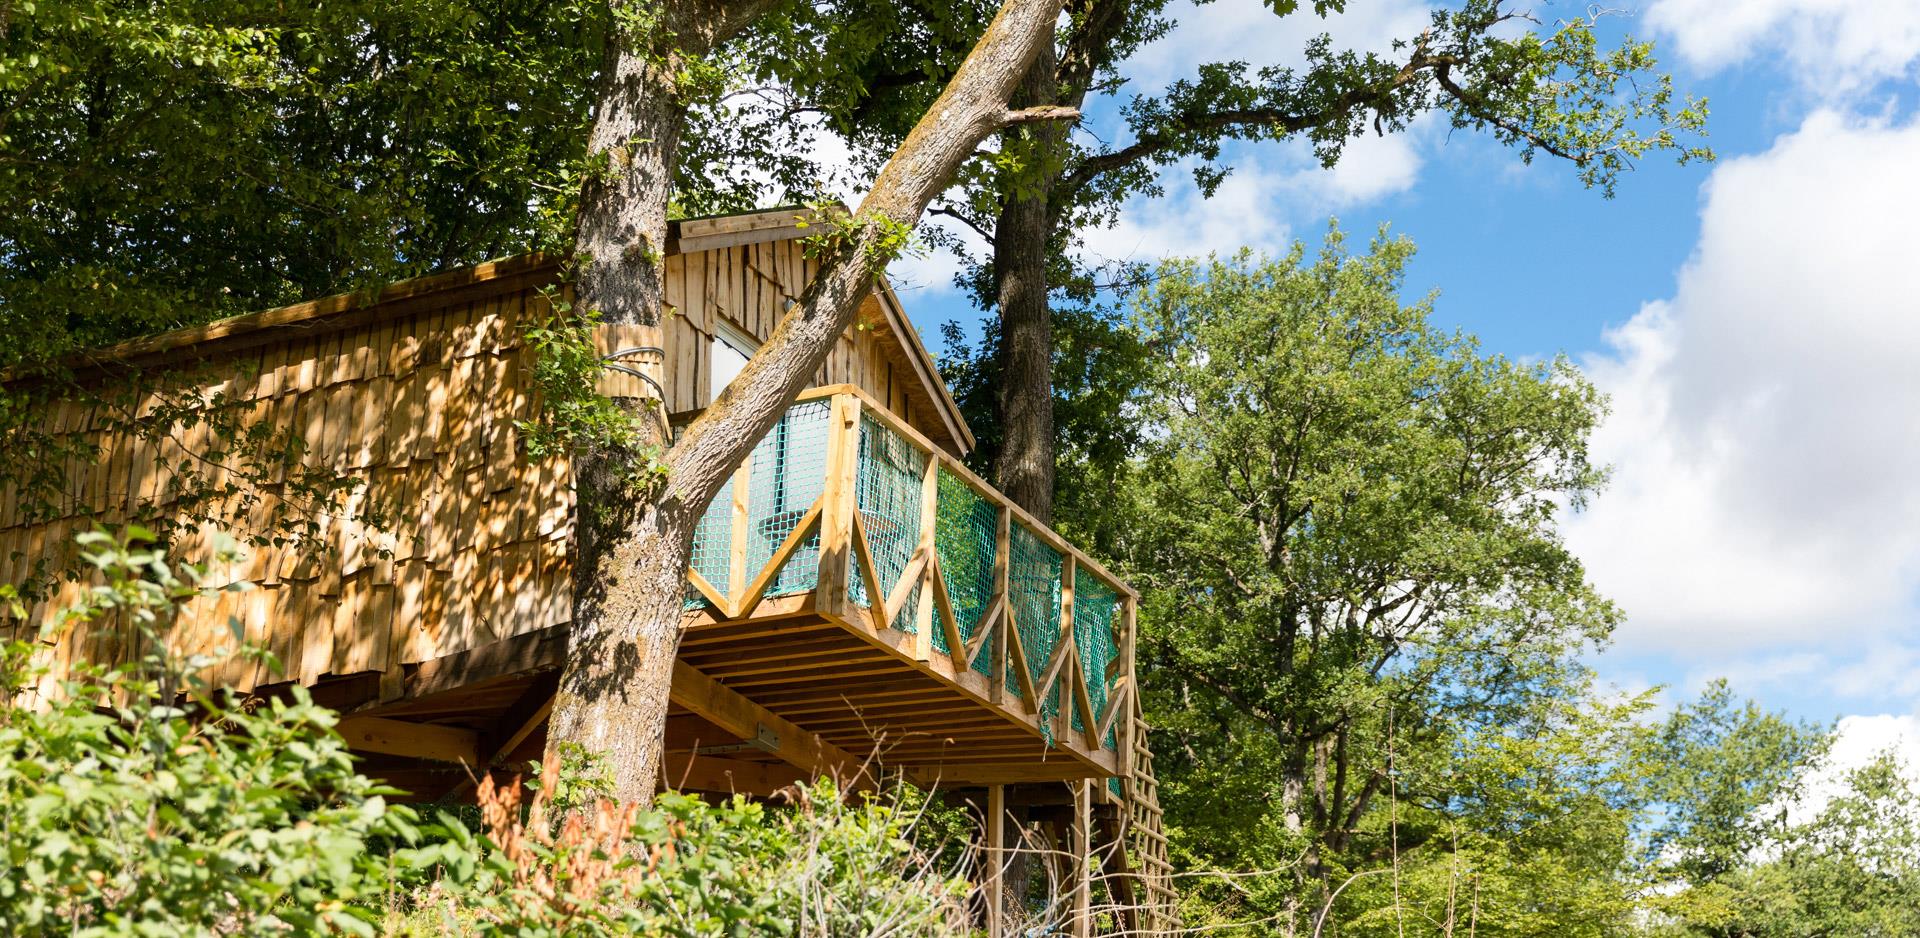 Vermietung von originellen Unterkünften im Oberelsass: Blick auf die originelle  hängende Baumhütte Robin Hood